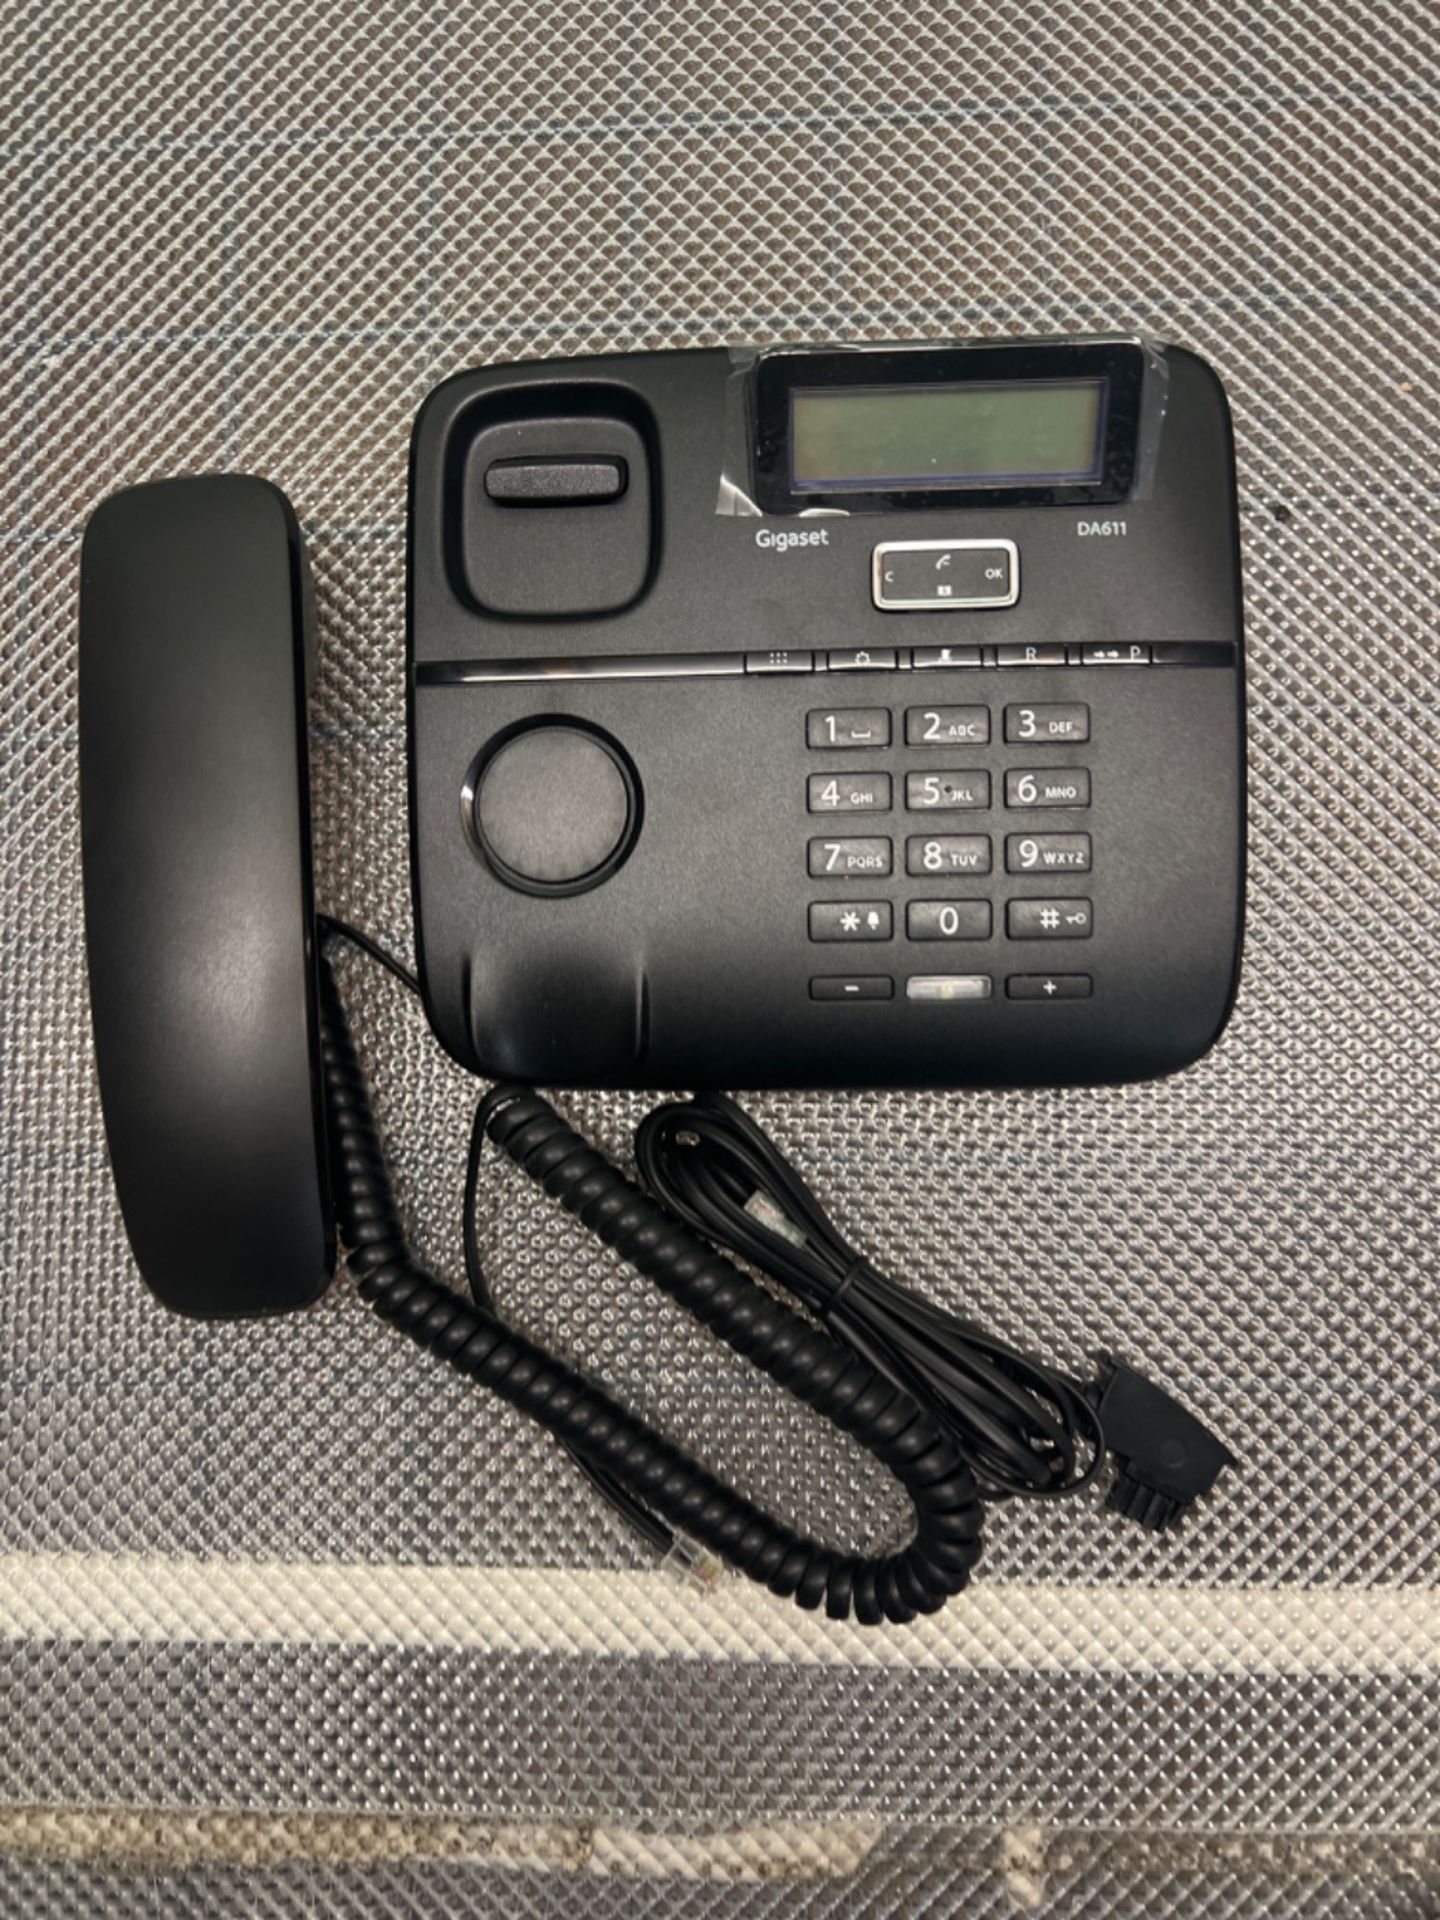 Gigaset DA611 - Schnurgebundenes Telefon mit Freisprechfunktion - Telefonbuch mit VIP-Kennzeichnung - Image 2 of 2